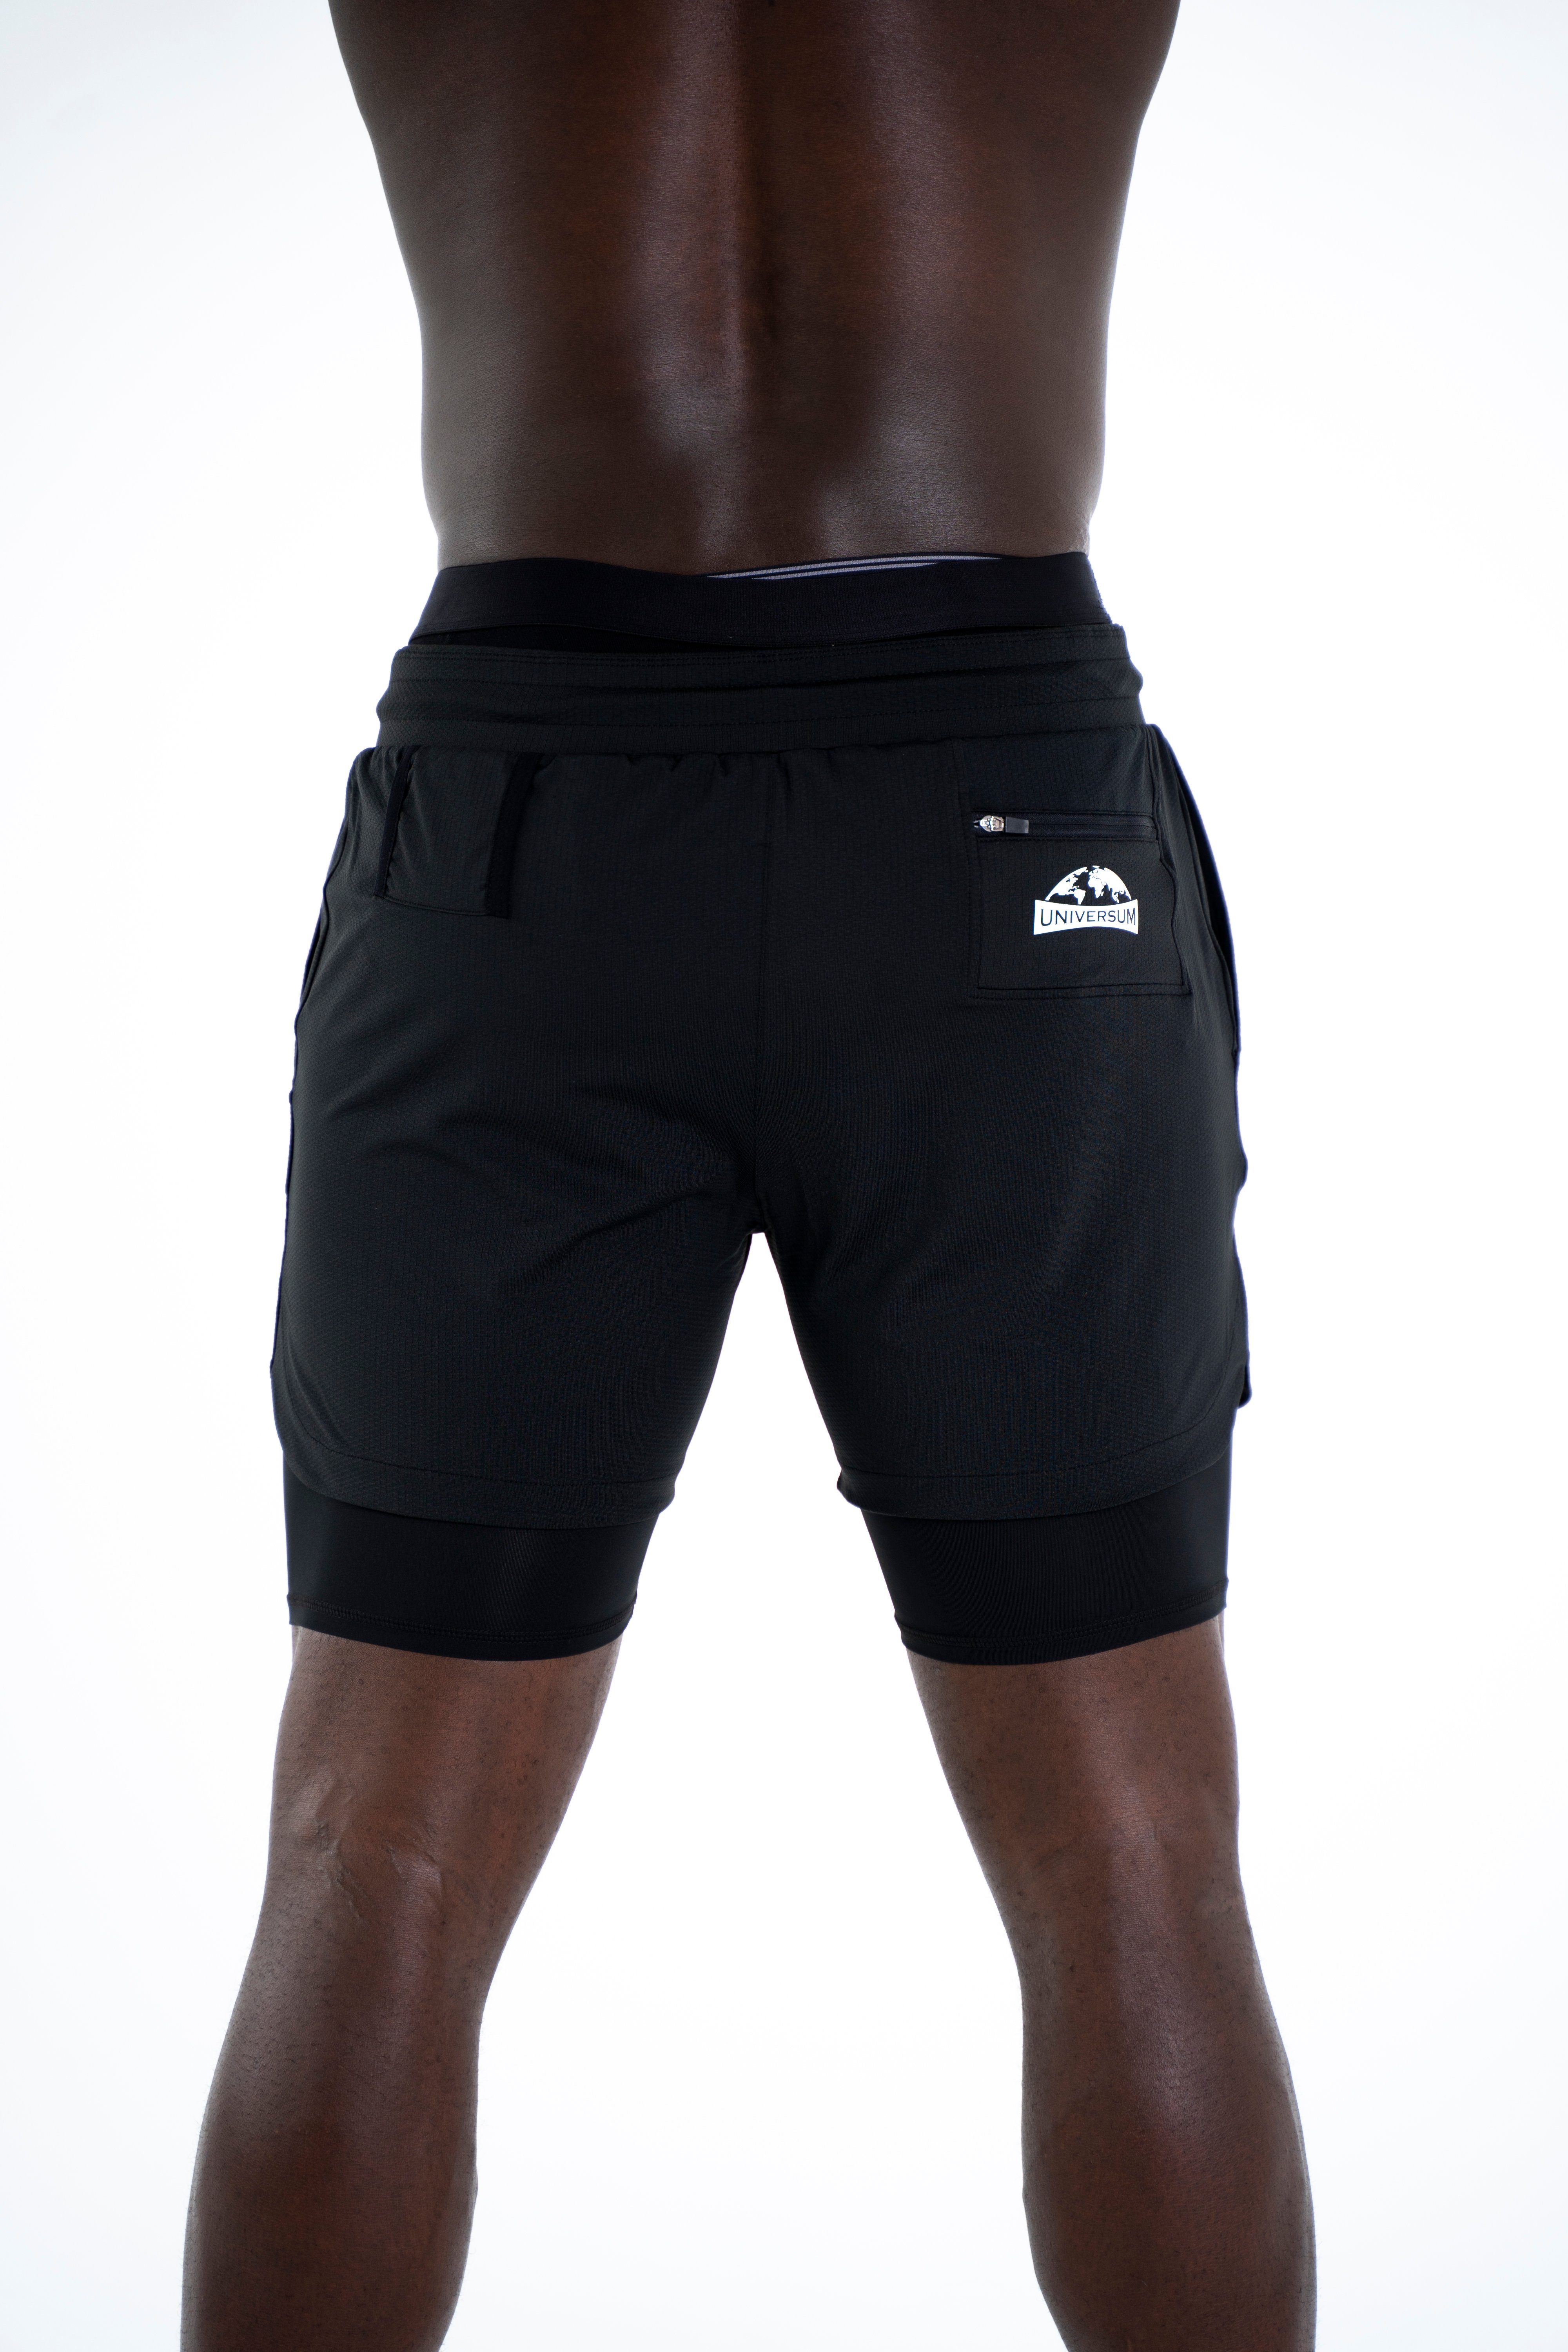 Kurze Shorts versteckter Sporthose Sportwear Handytasche Universum Unterziehhose schwarz mit mit Hose funktioneller